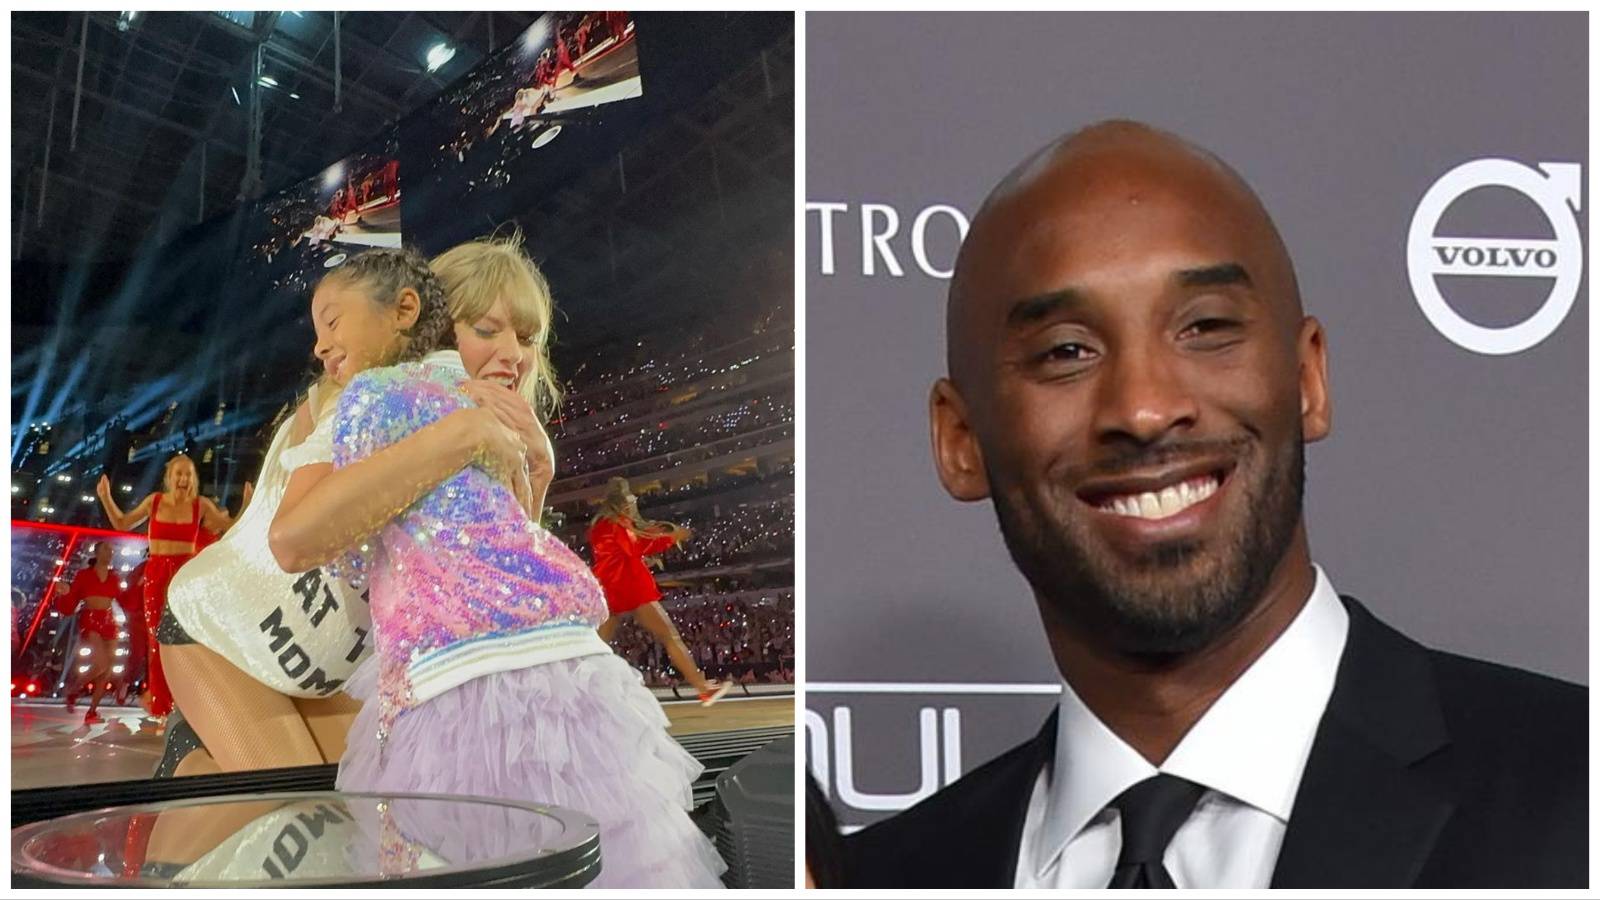 Taylor Swift raznježila gestom: Na pozornici joj se podružila kći pokojnog košarkaša Bryanta